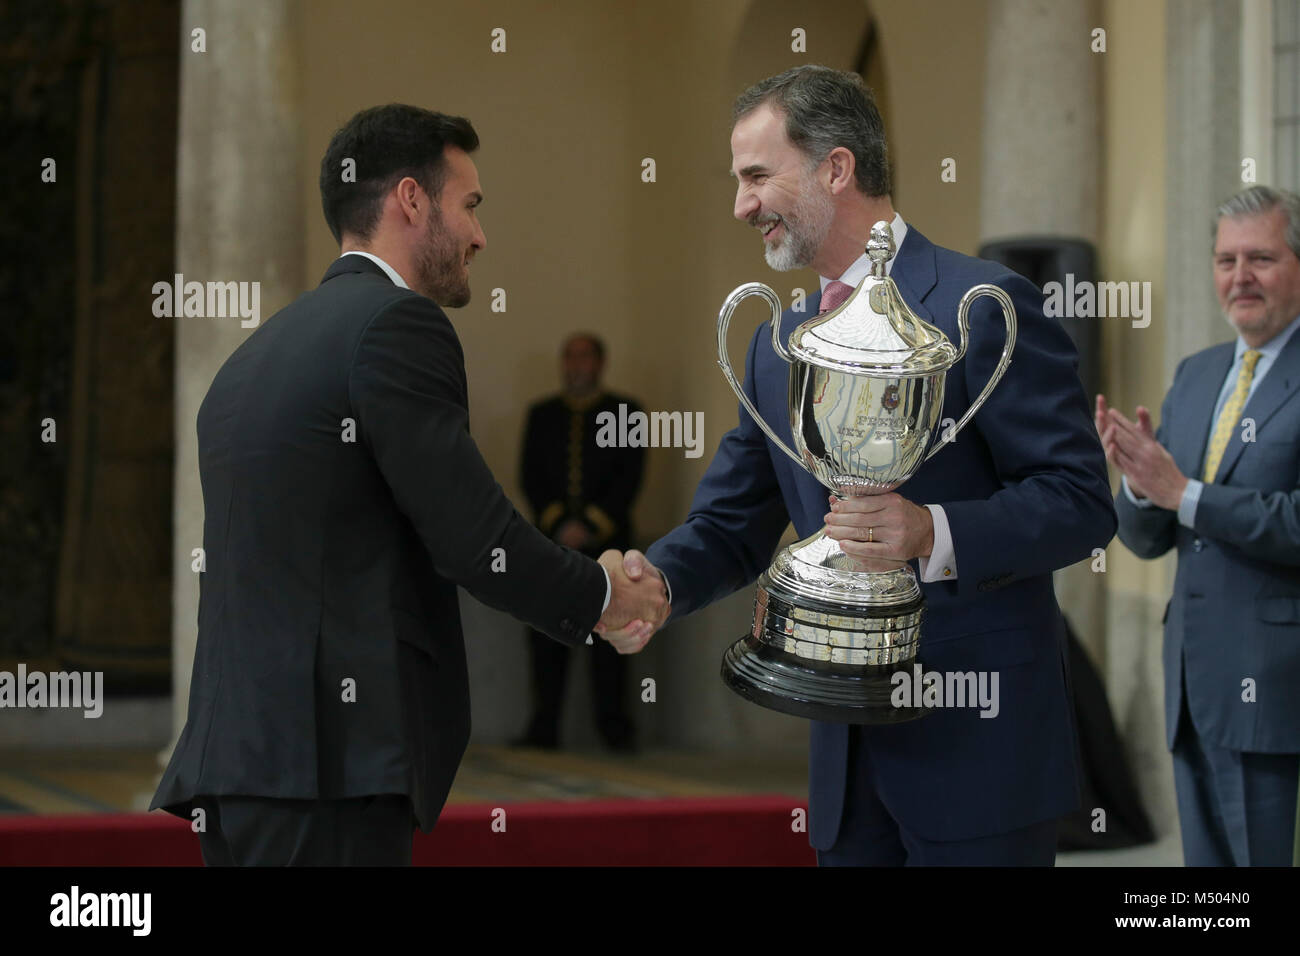 Roi d'Espagne Felipe VI et Saul Craviotto au National Sports Awards à Madrid, en Espagne, le lundi 19 février 2018 Crédit : Gtres información más Comuniación sur ligne, S.L./Alamy Live News Banque D'Images